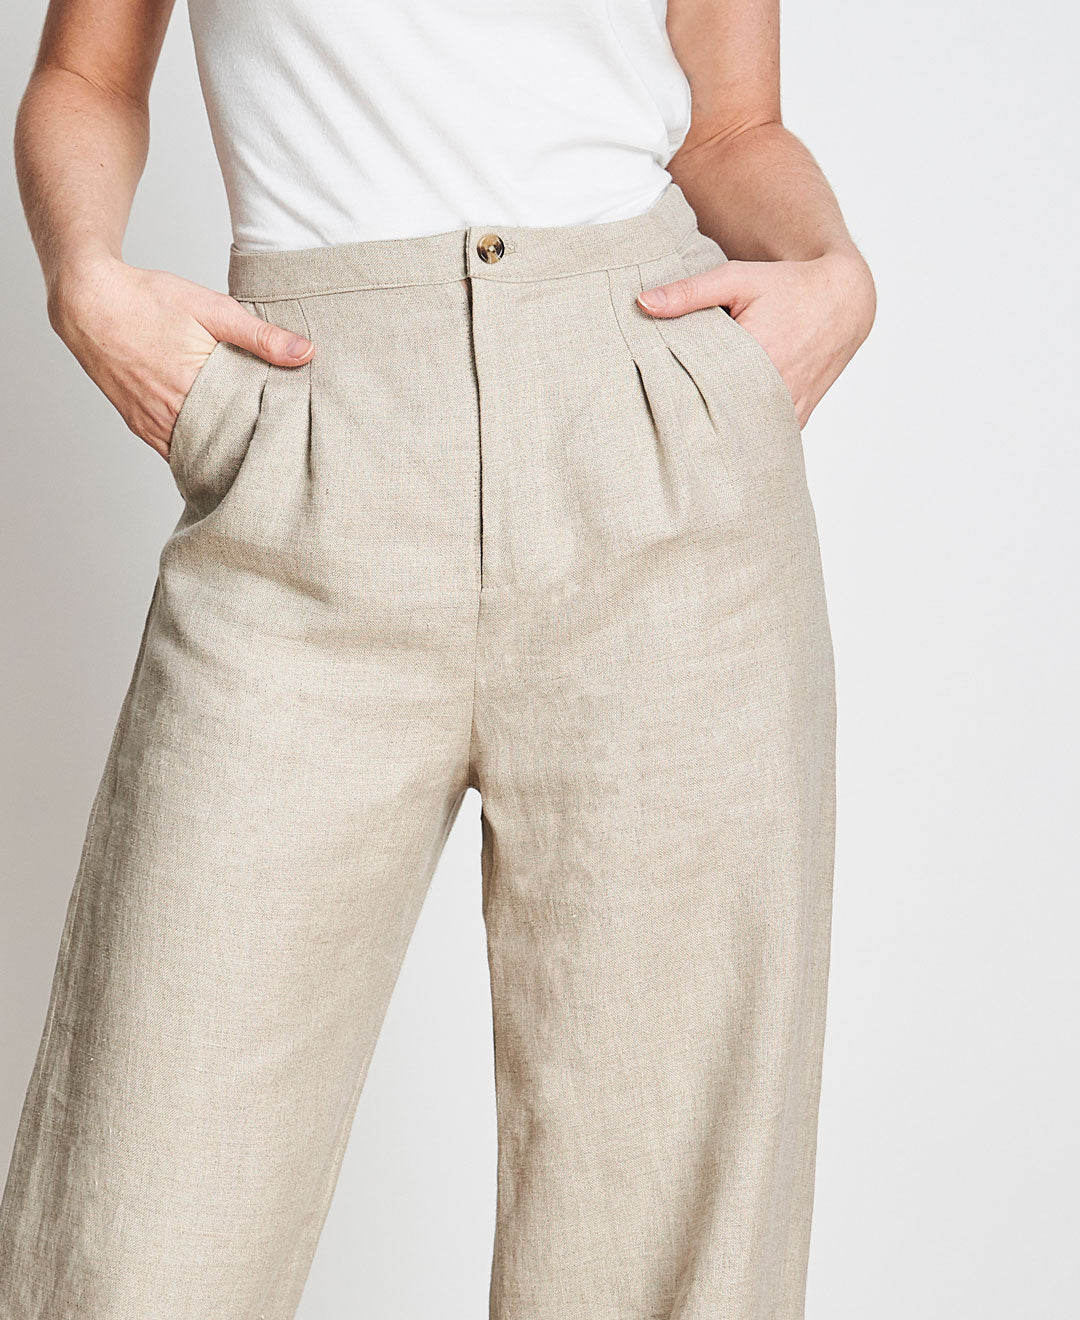 Pantalon en lin beige transformable fait au Québec dans des conditions éthiques